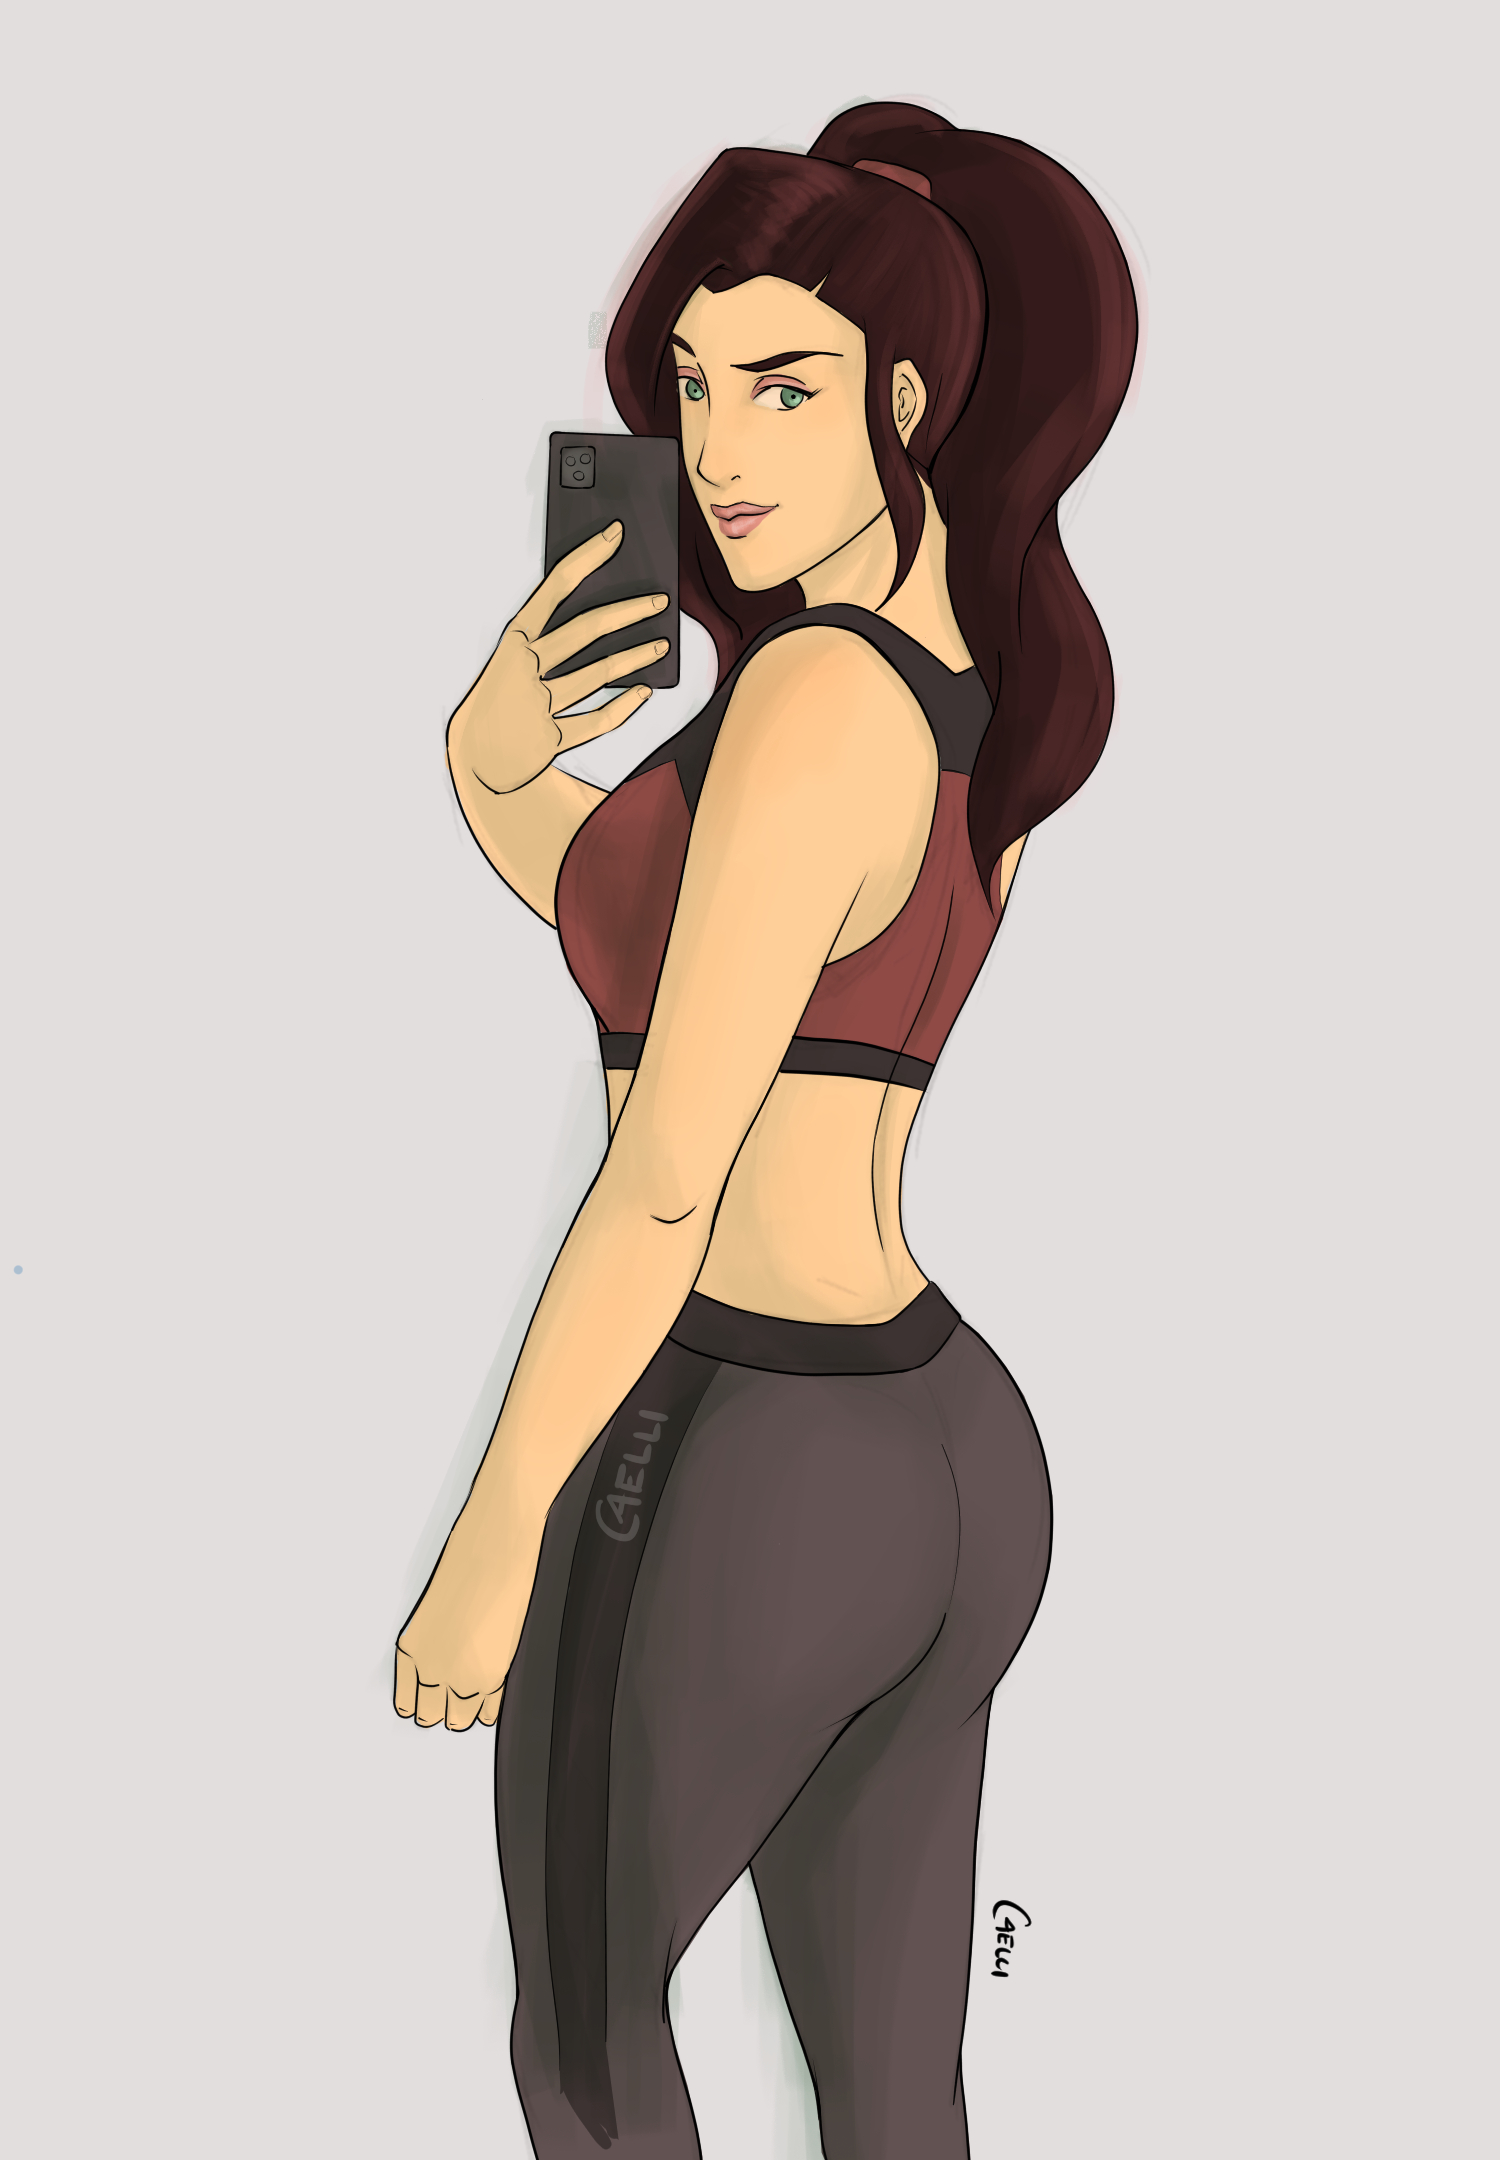 Asami's gym selfie featuring her butt.